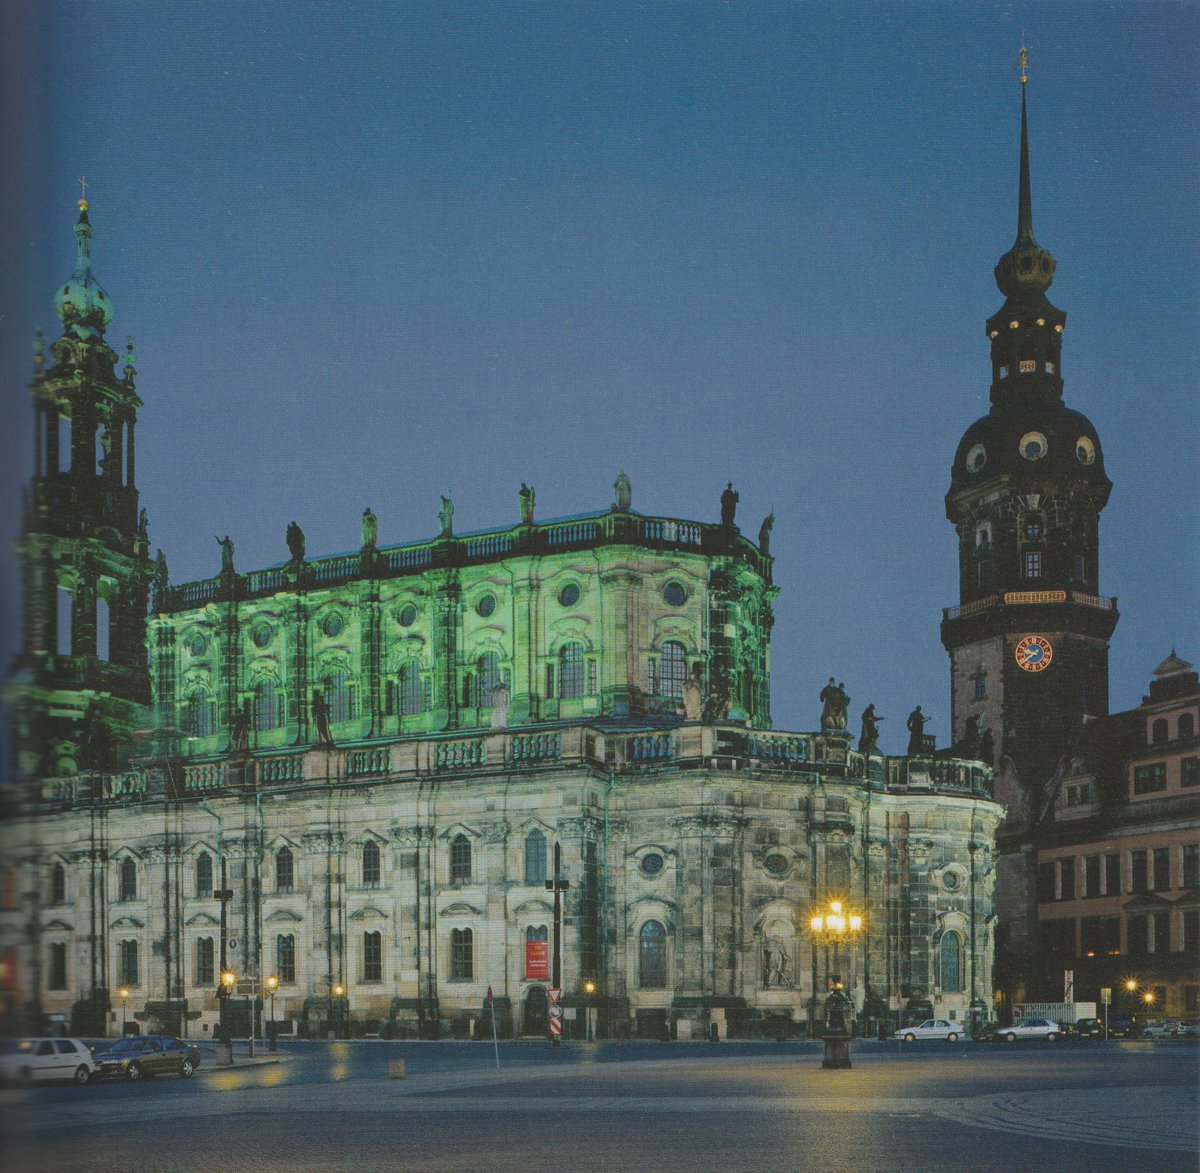 Die Bombardierung Dresdens 1945 hatte überall in der Innenstadt ihre Spuren hinterlassen. Wie allerorts beseitigen zahlreiche Trümmerfrauen auch auf dem Theaterplatz die Überreste der zerstörten Gebäude. Im Hintergrund ist die ausgebombte Hofkirche zu sehen.